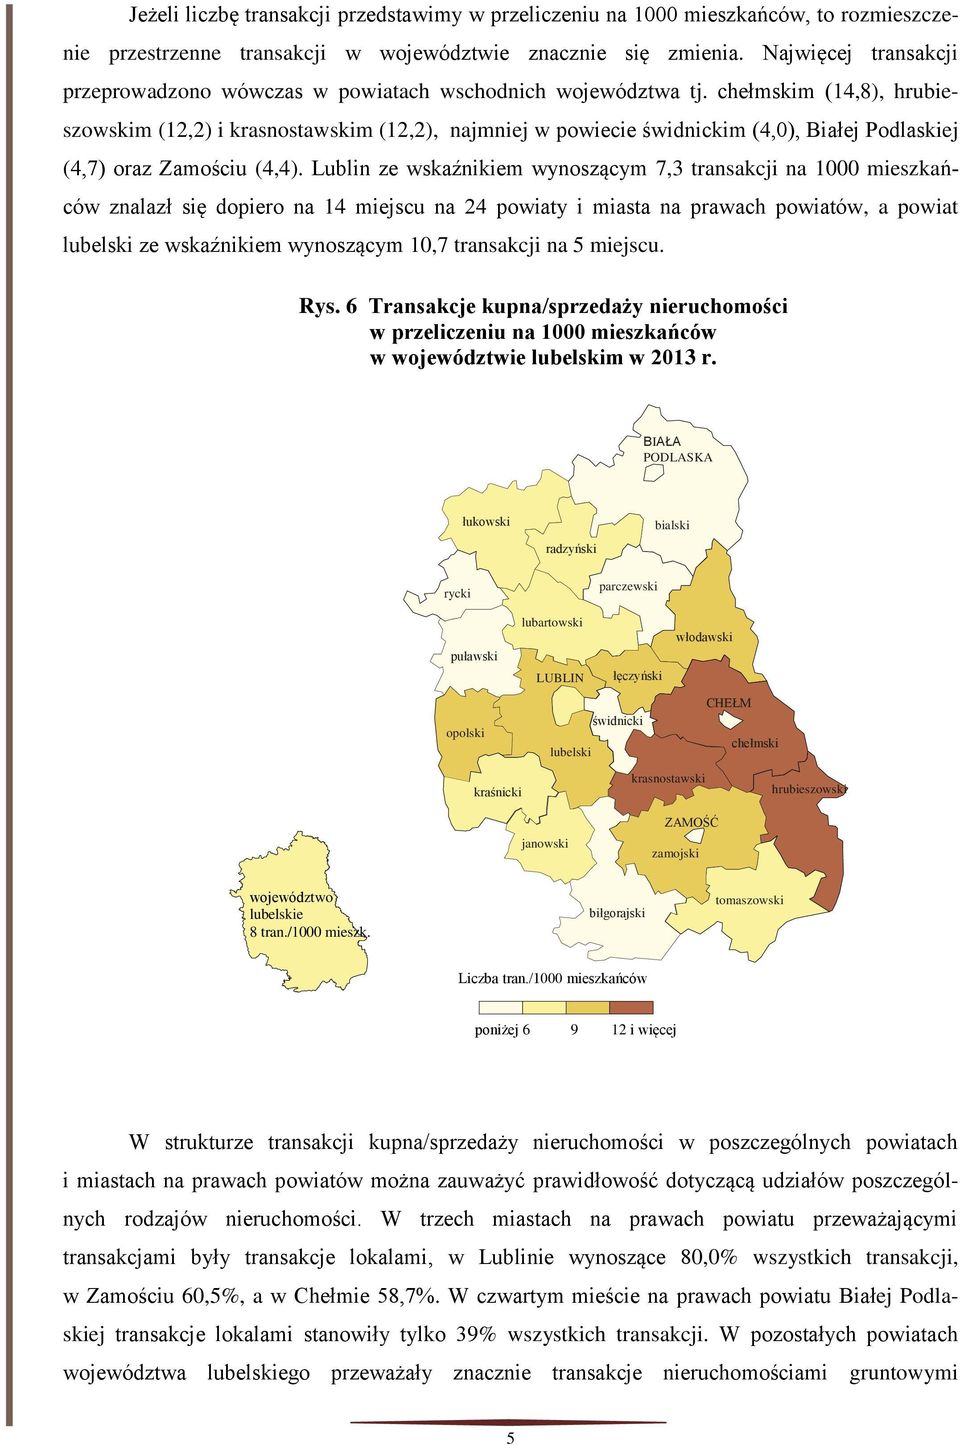 Lublin ze wskaźnikiem wynoszącym 7,3 transakcji na 1000 mieszkańców znalazł się dopiero na 14 miejscu na 24 powiaty i miasta na prawach powiatów, a powiat ze wskaźnikiem wynoszącym 10,7 transakcji na